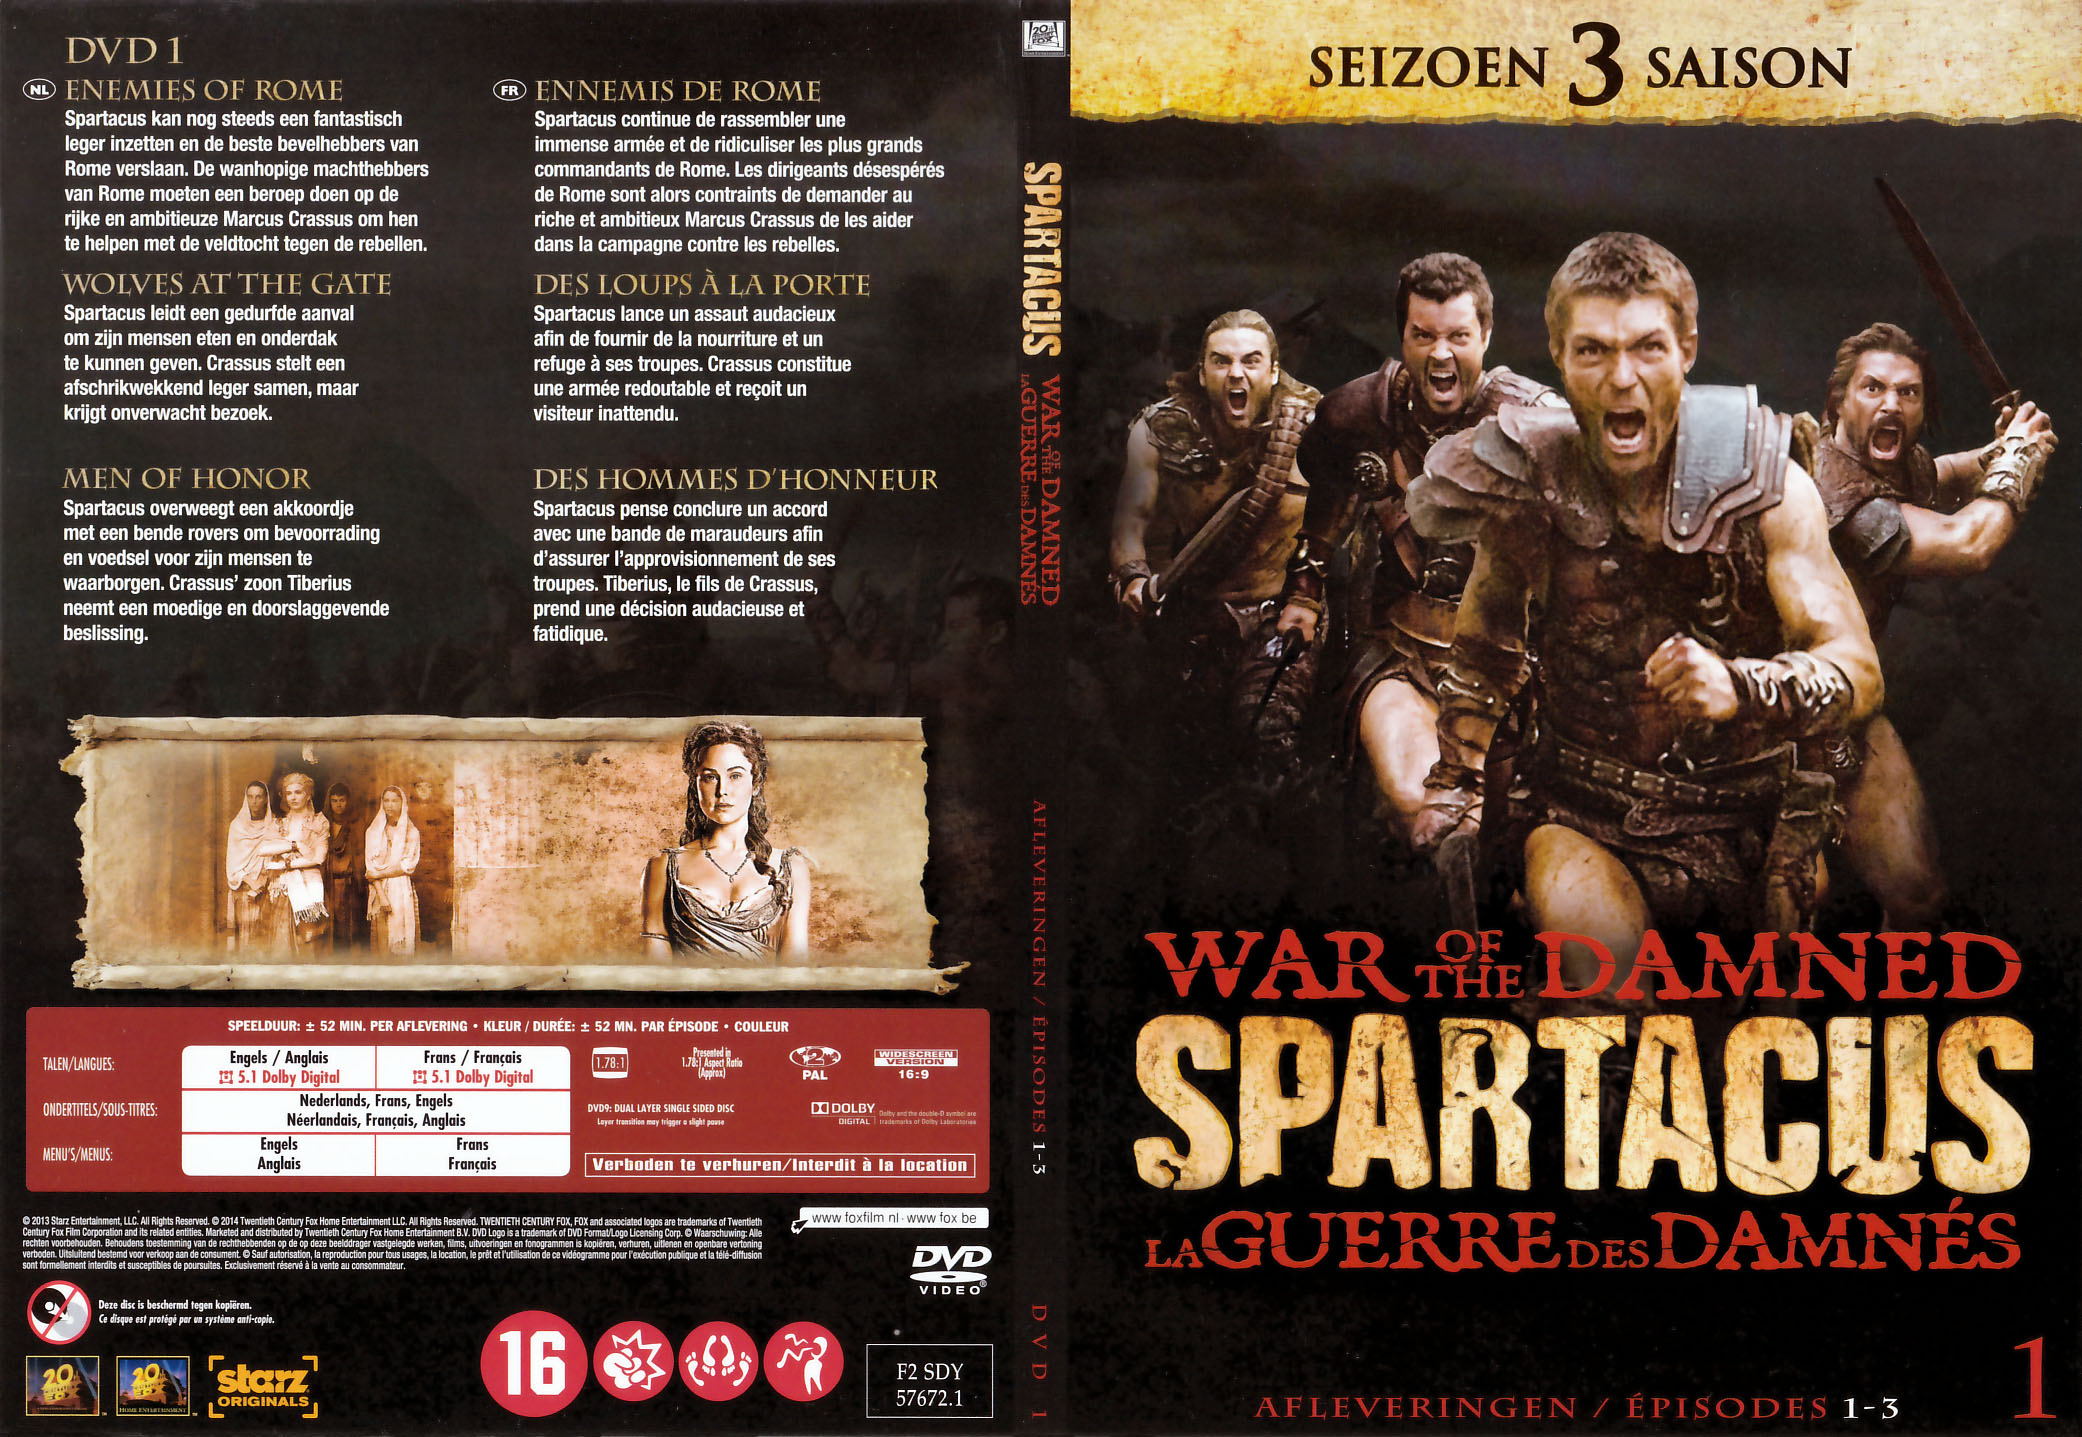 Jaquette DVD Spartacus La guerre des damnés Saison 3 DVD 1